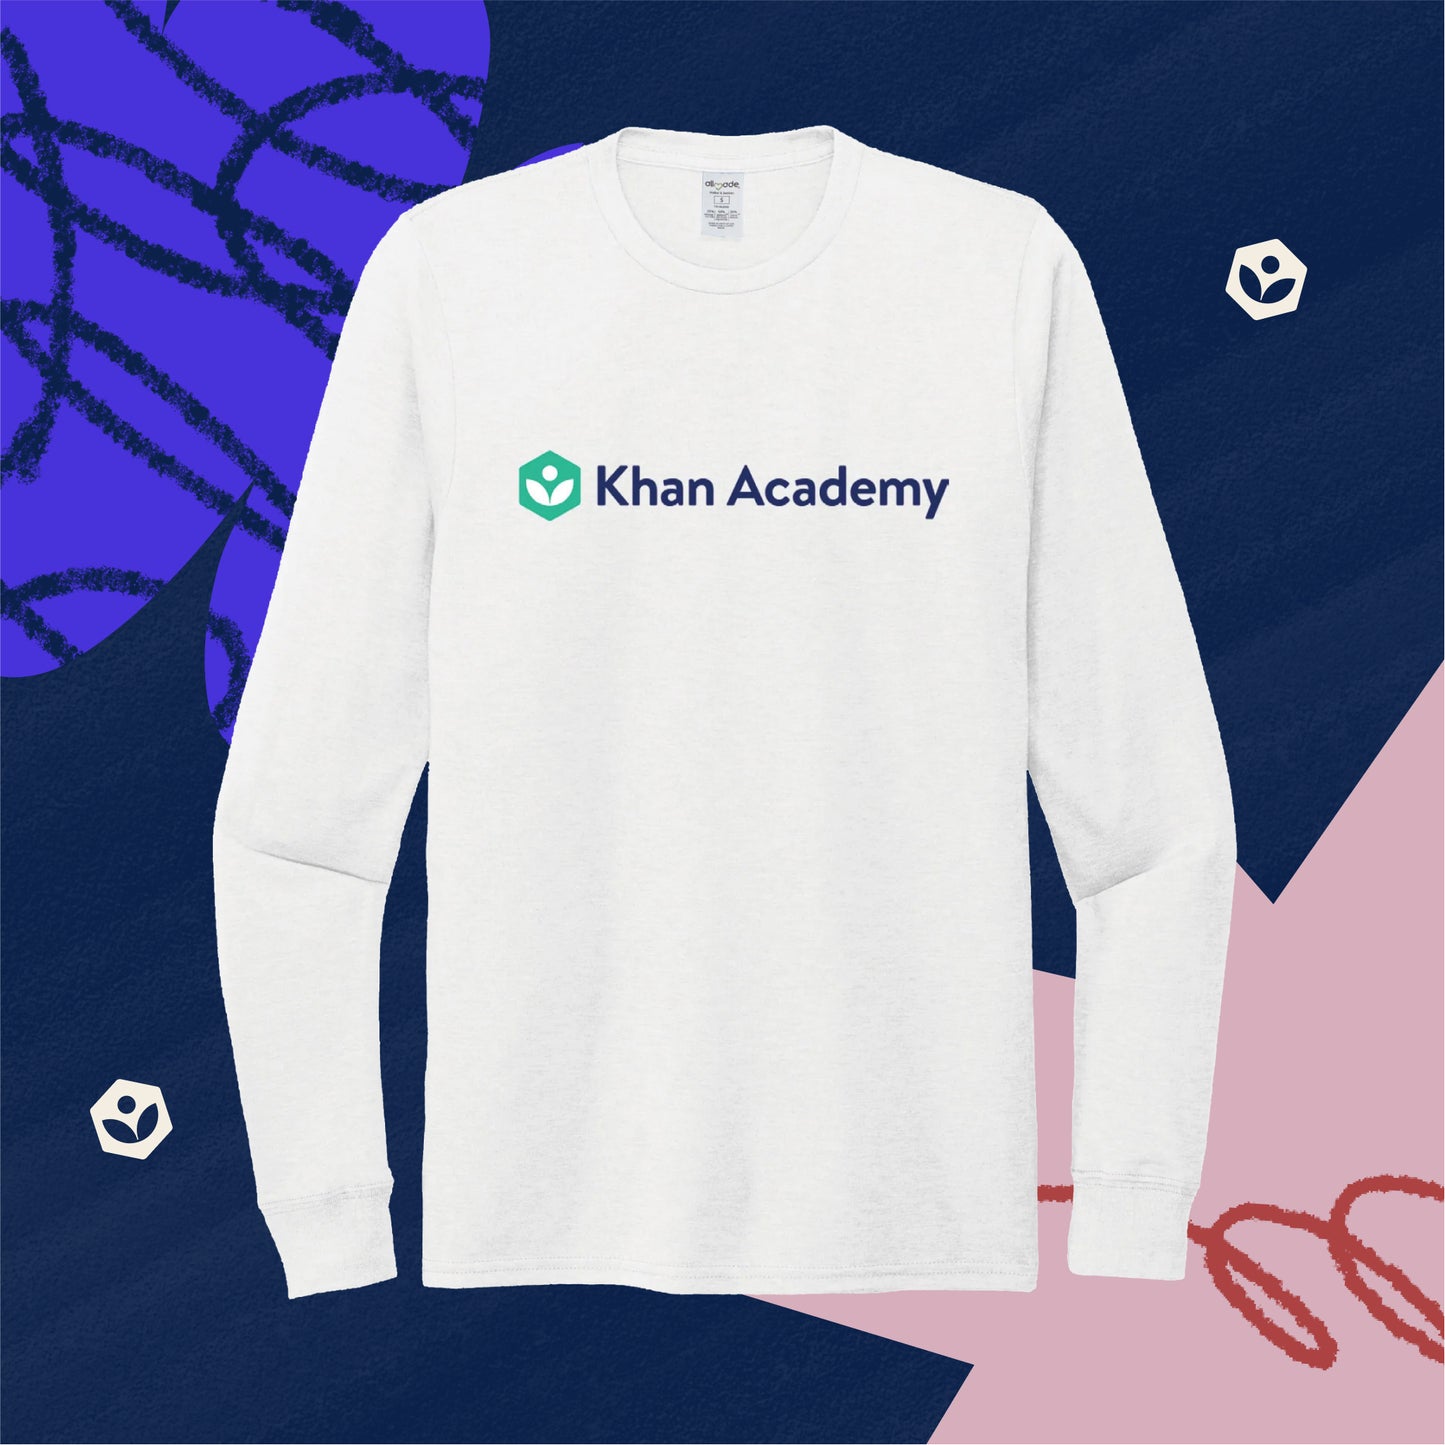 Khan Academy Full Front Long Sleeve Shirt